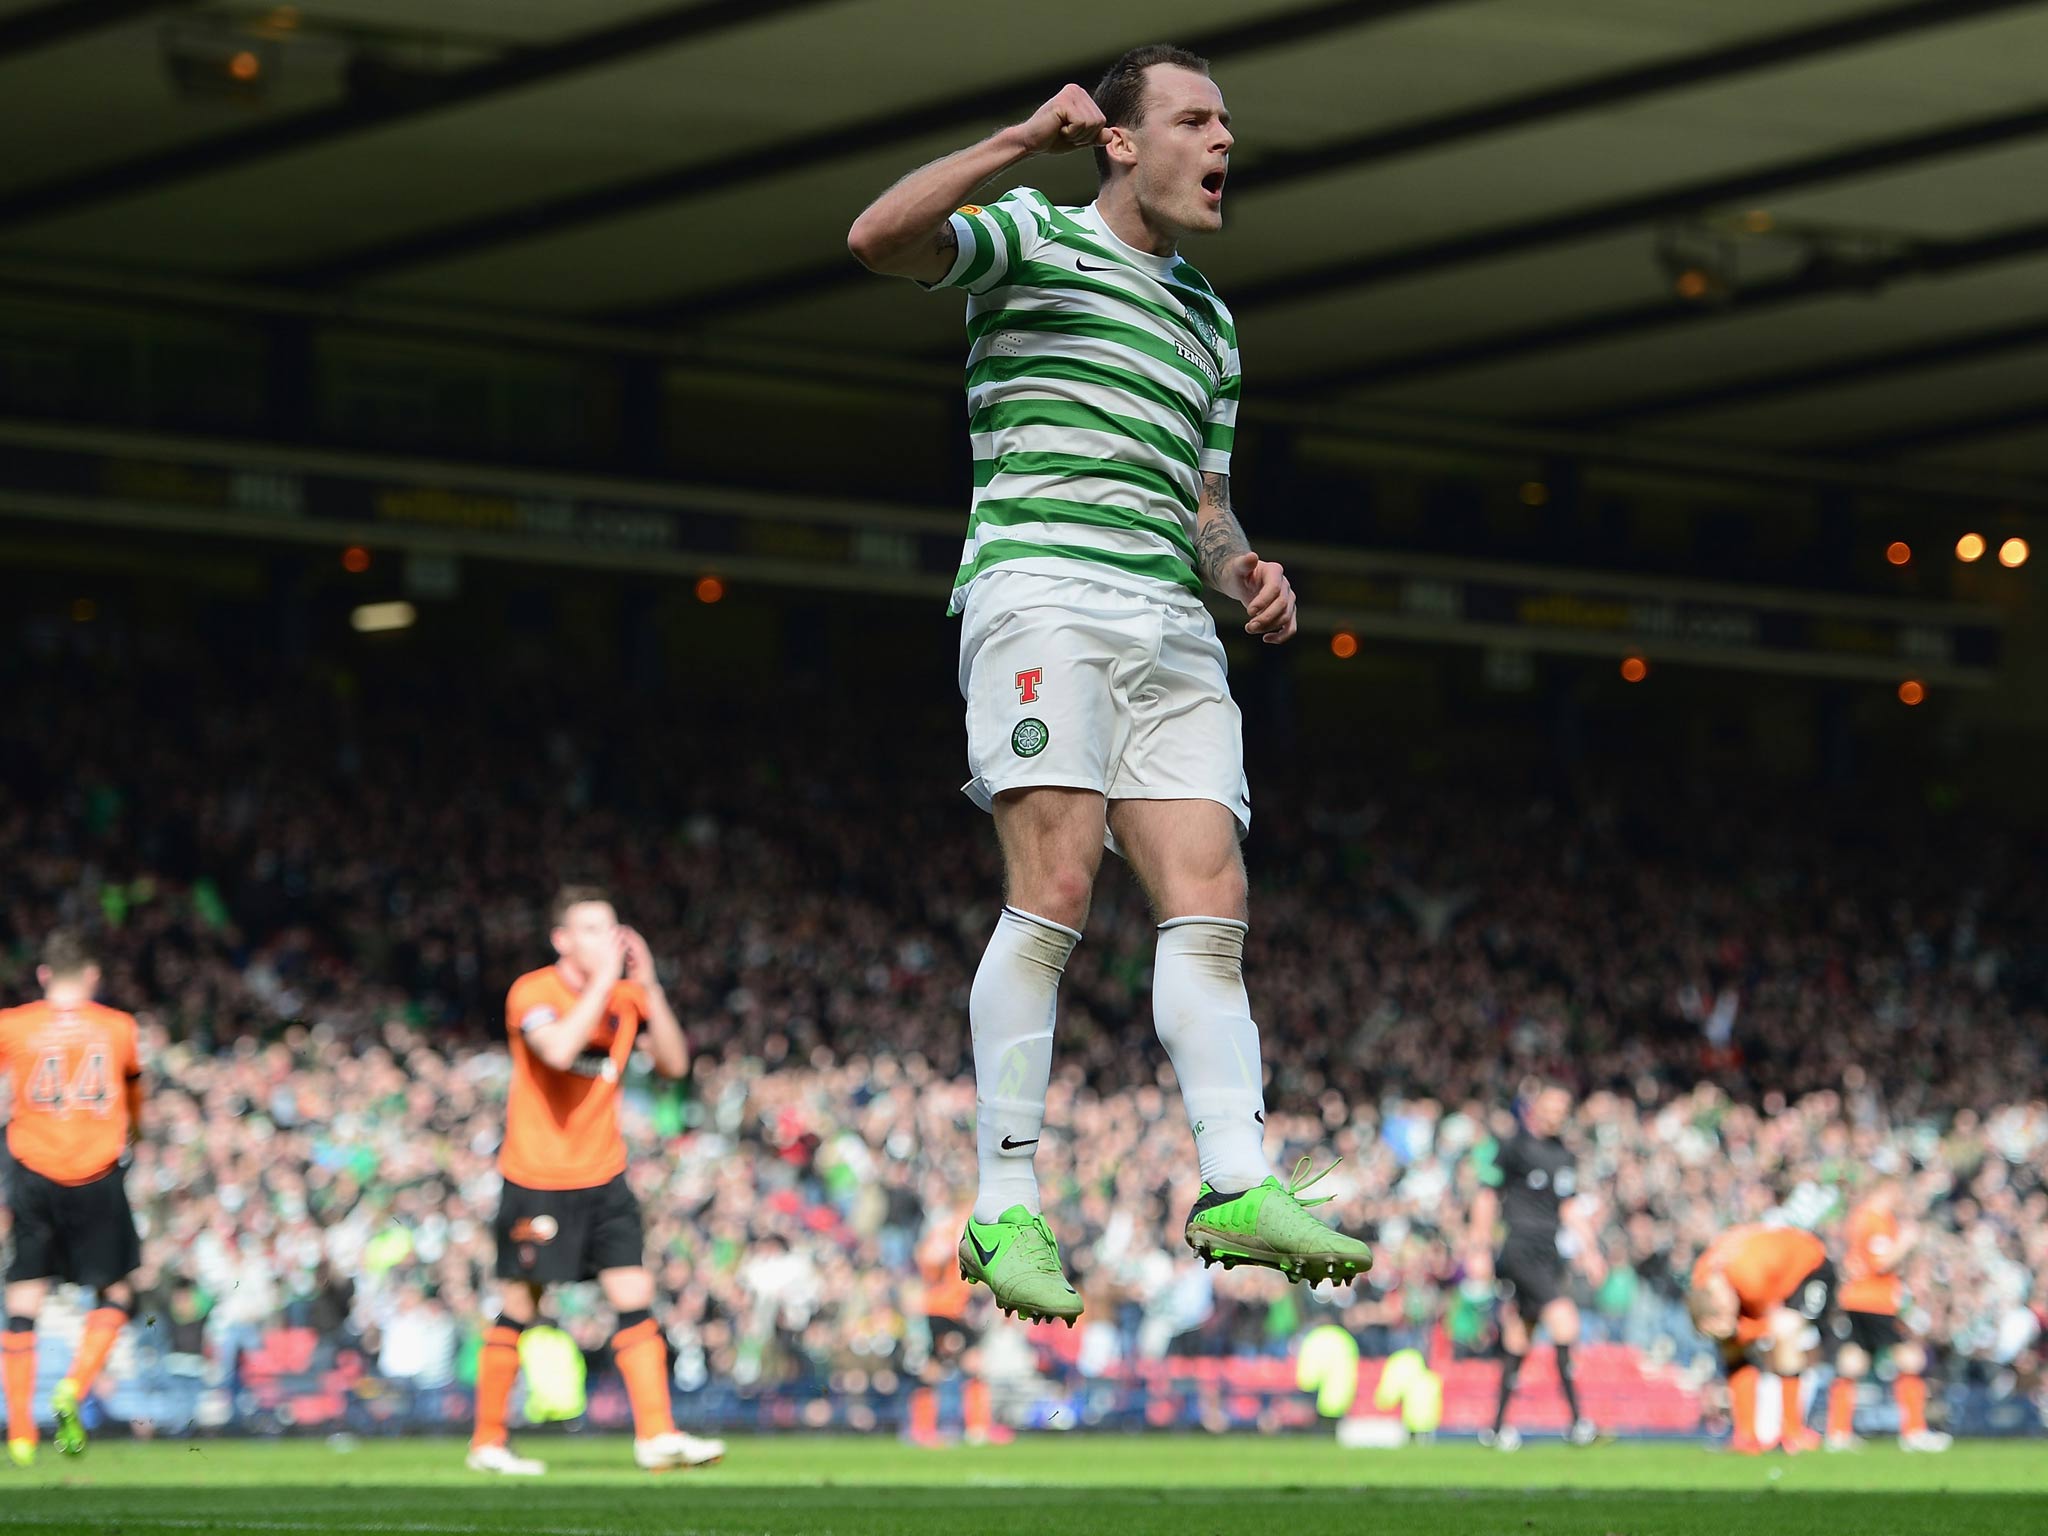 Anthony Stokes of Celtic celebrates scoring the winning goal